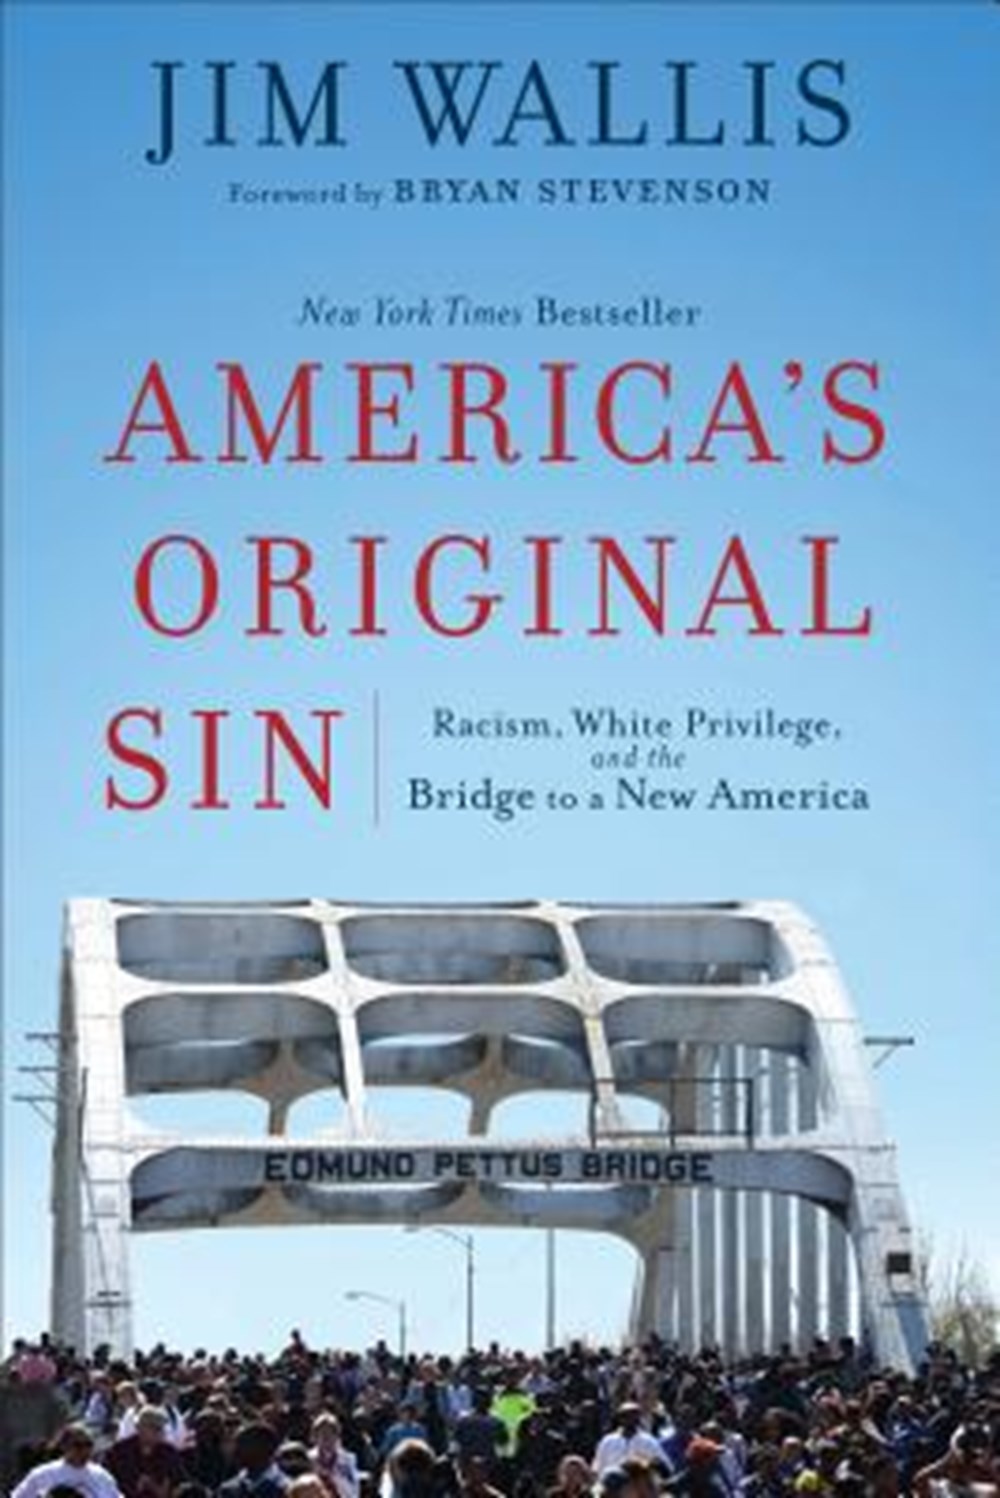 America's Original Sin Racism, White Privilege, and the Bridge to a New America